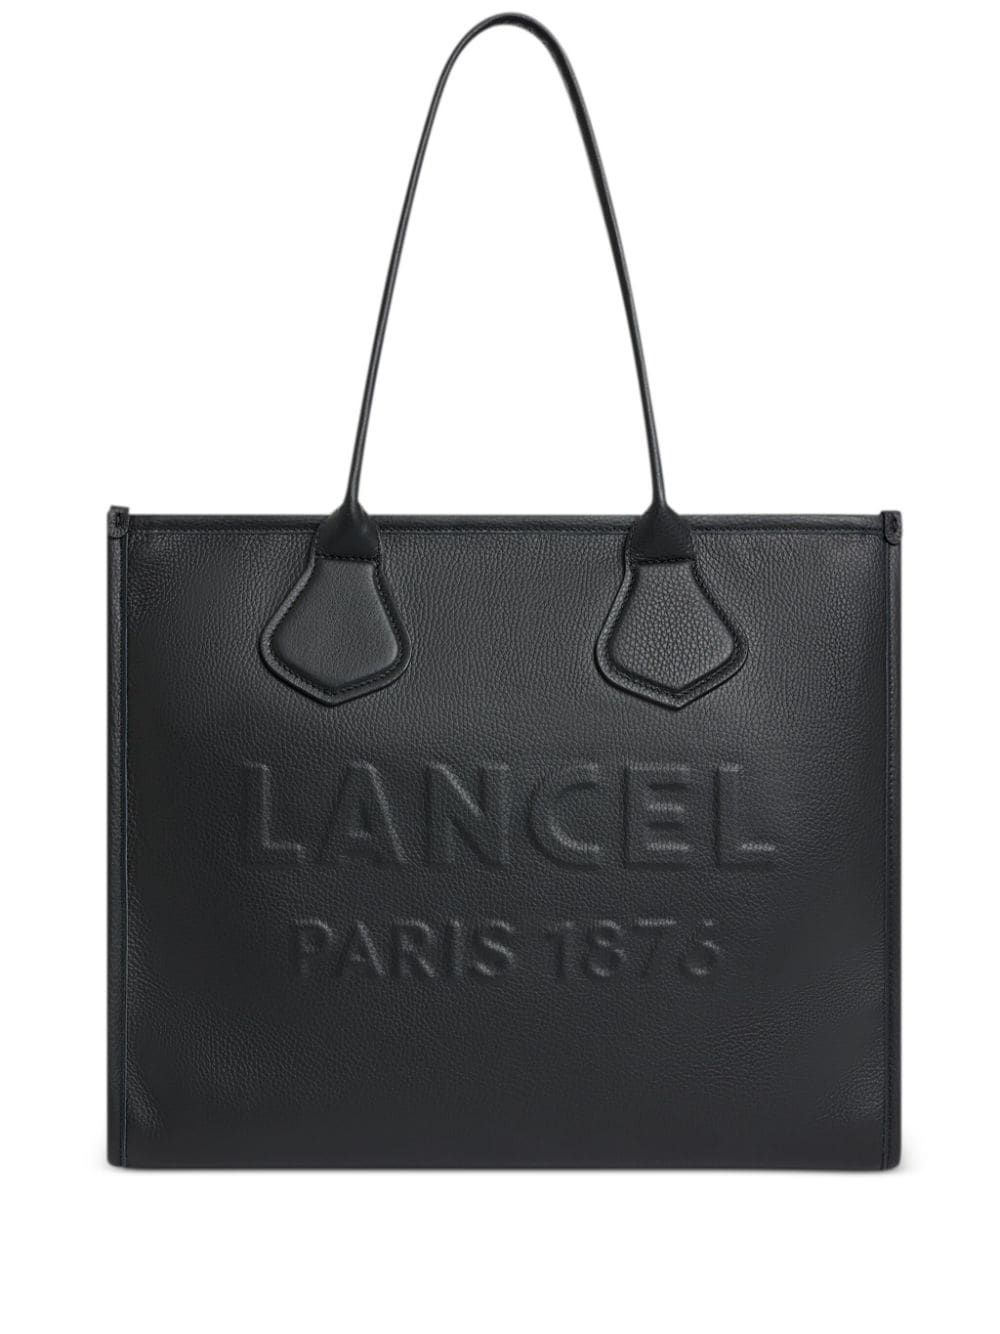 large Jour de Lancel leather tote bag - 1